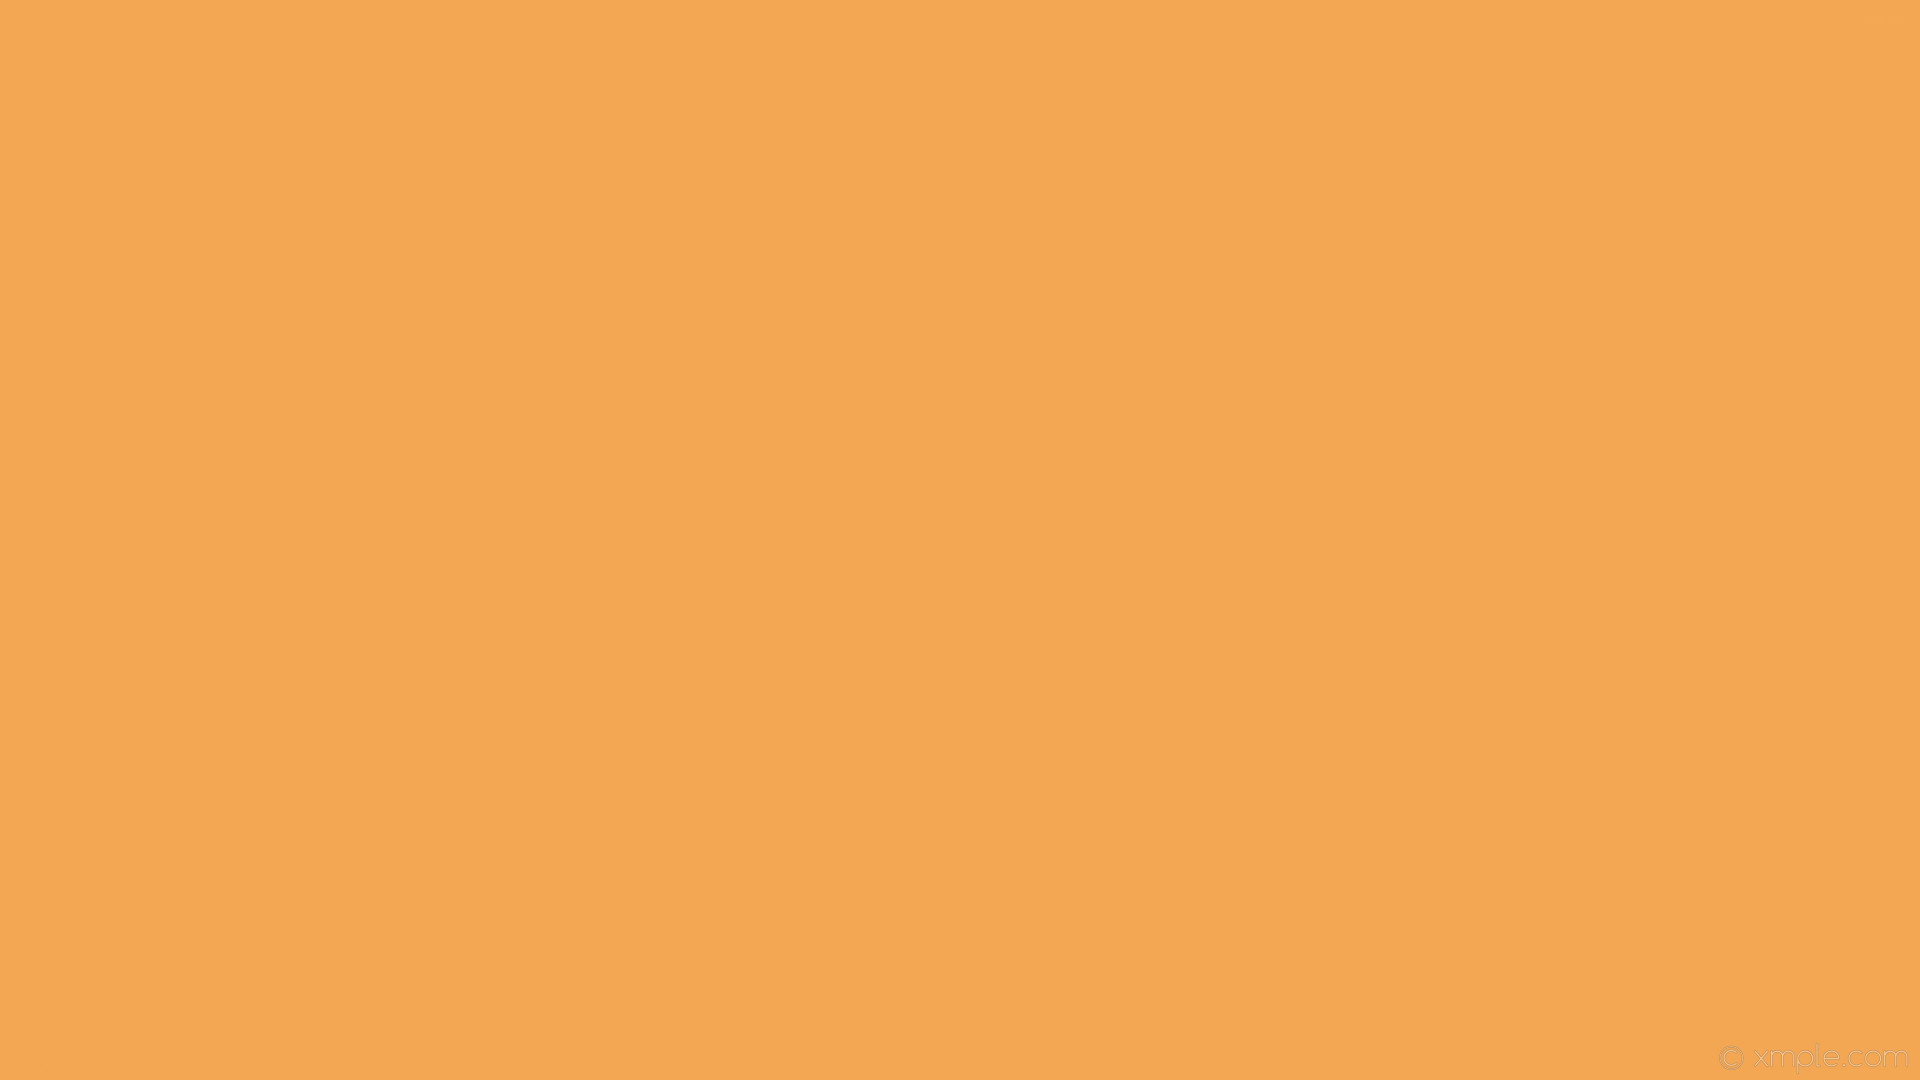 1920x1080 wallpaper orange plain one colour solid color single #f4a753